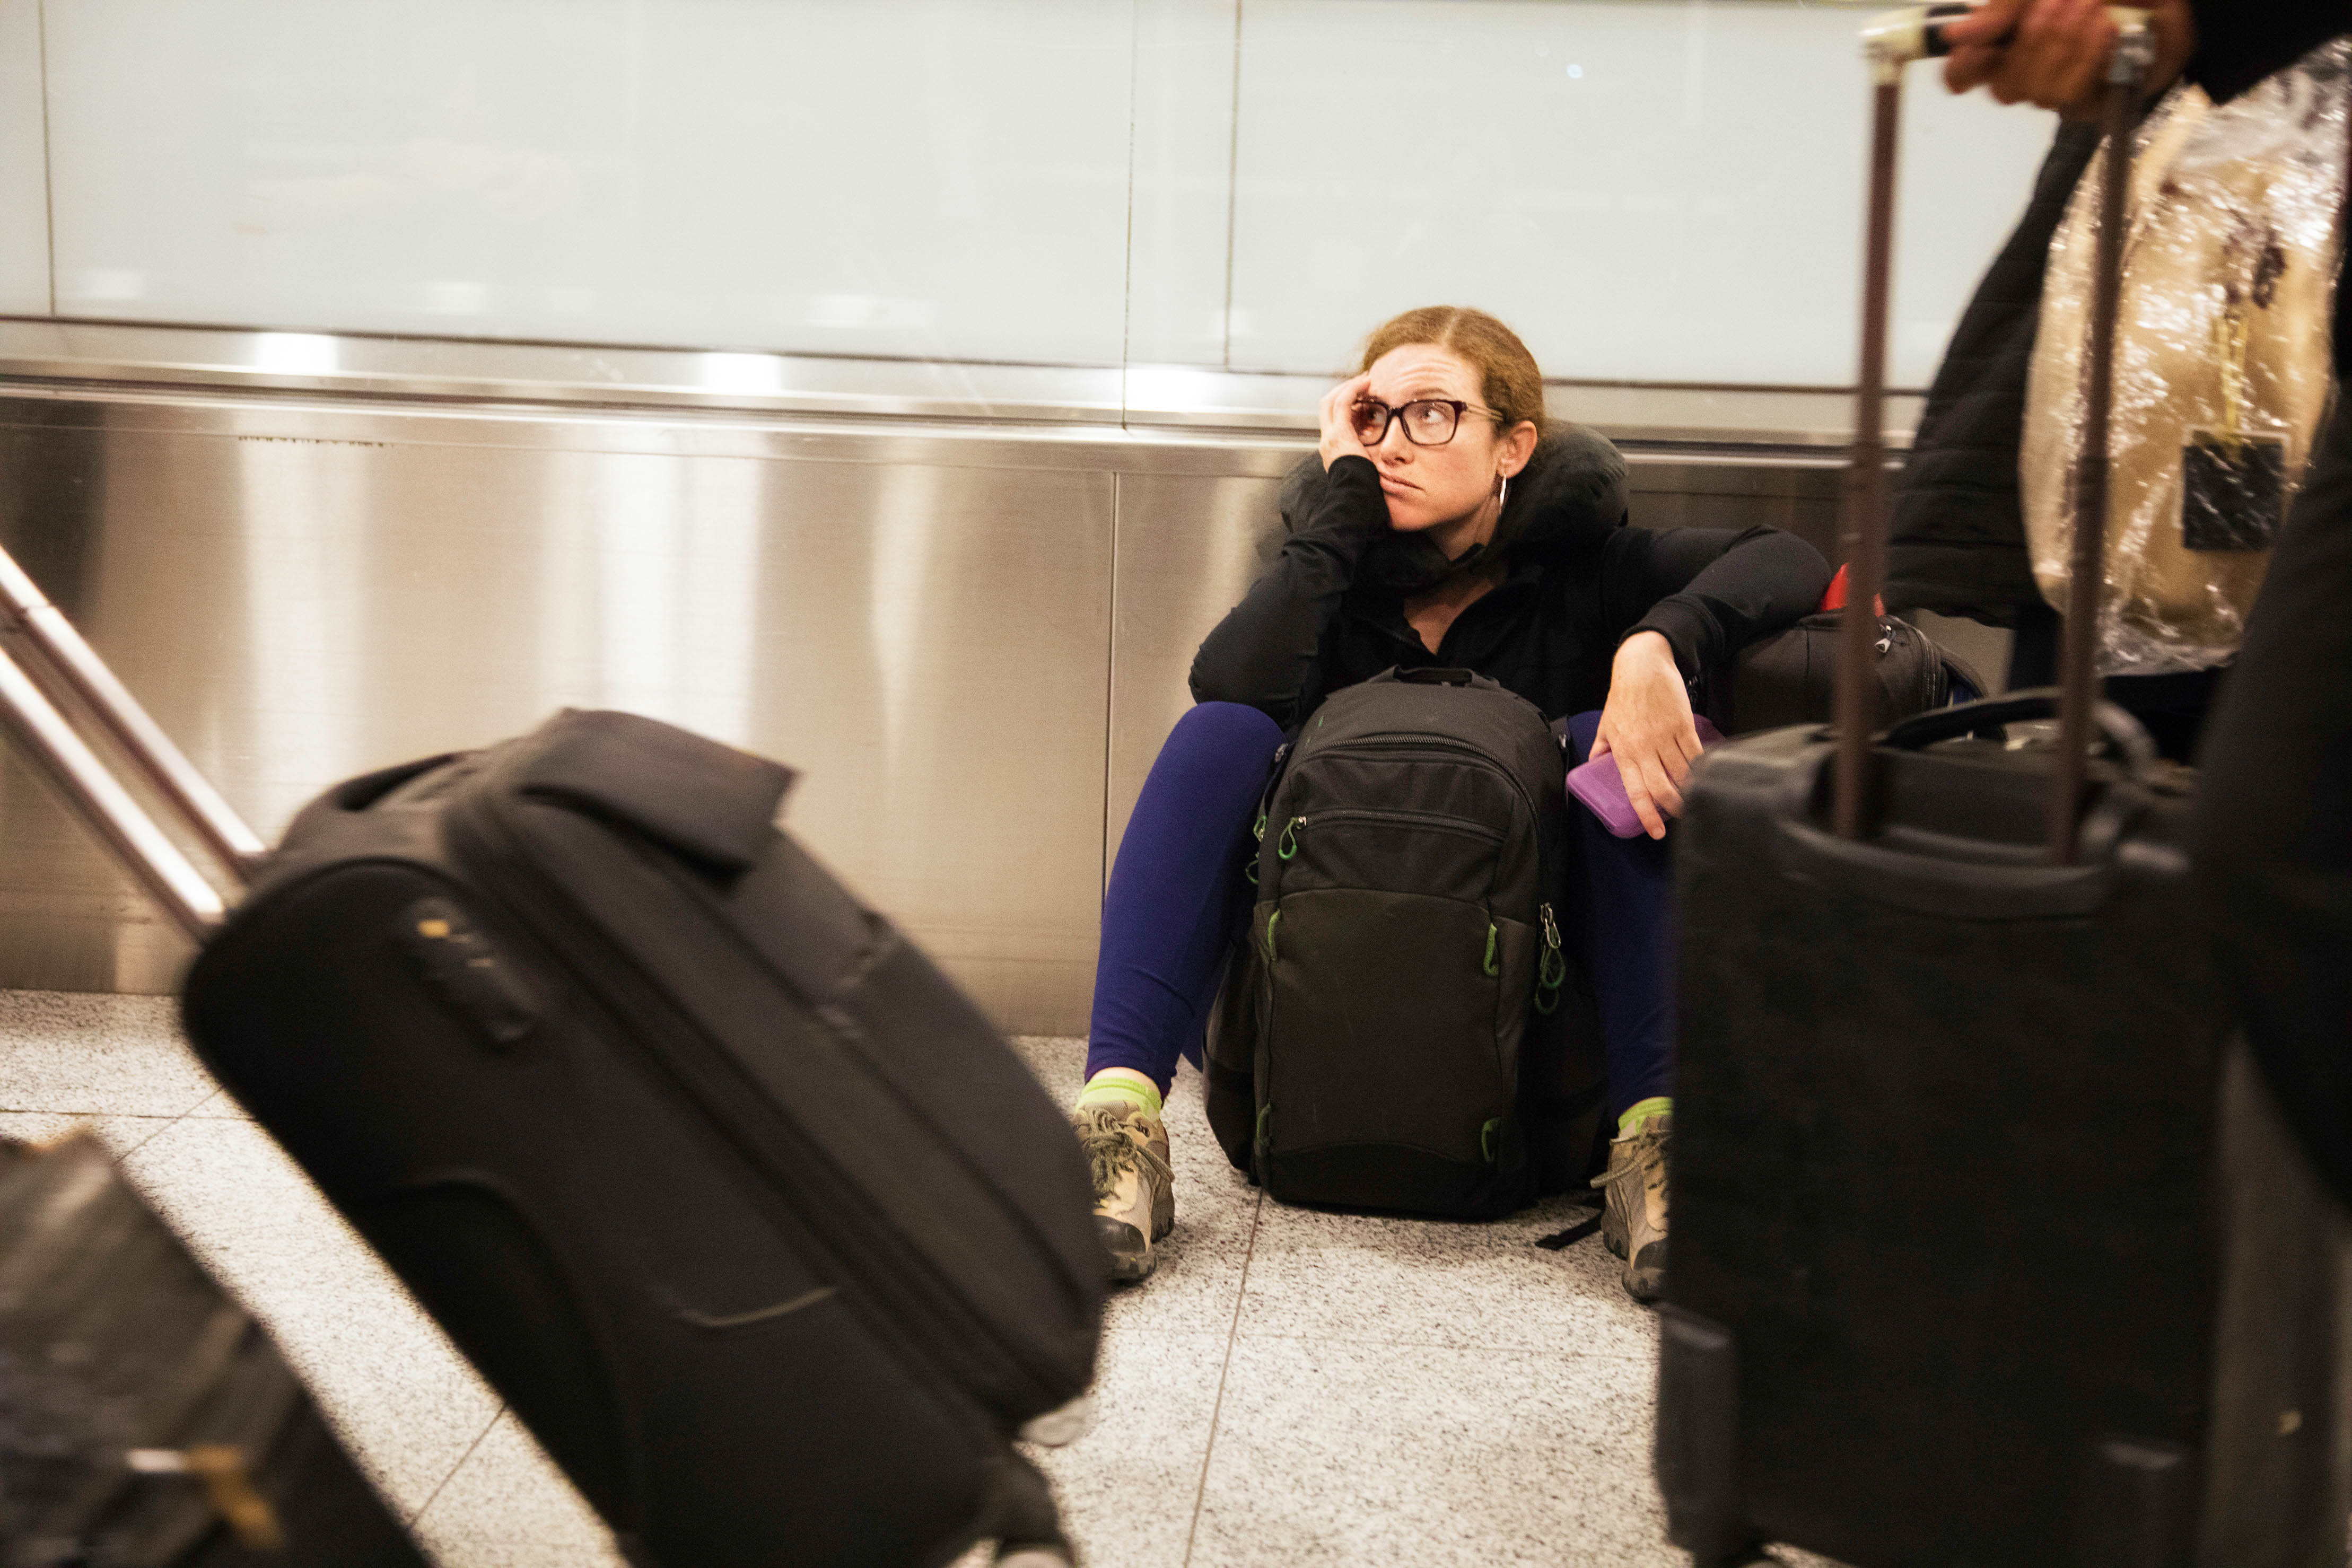 Es importante quitar las etiquetas de equipaje antiguas para asegurarse de que la información de destino correcta esté en su equipaje facturado.